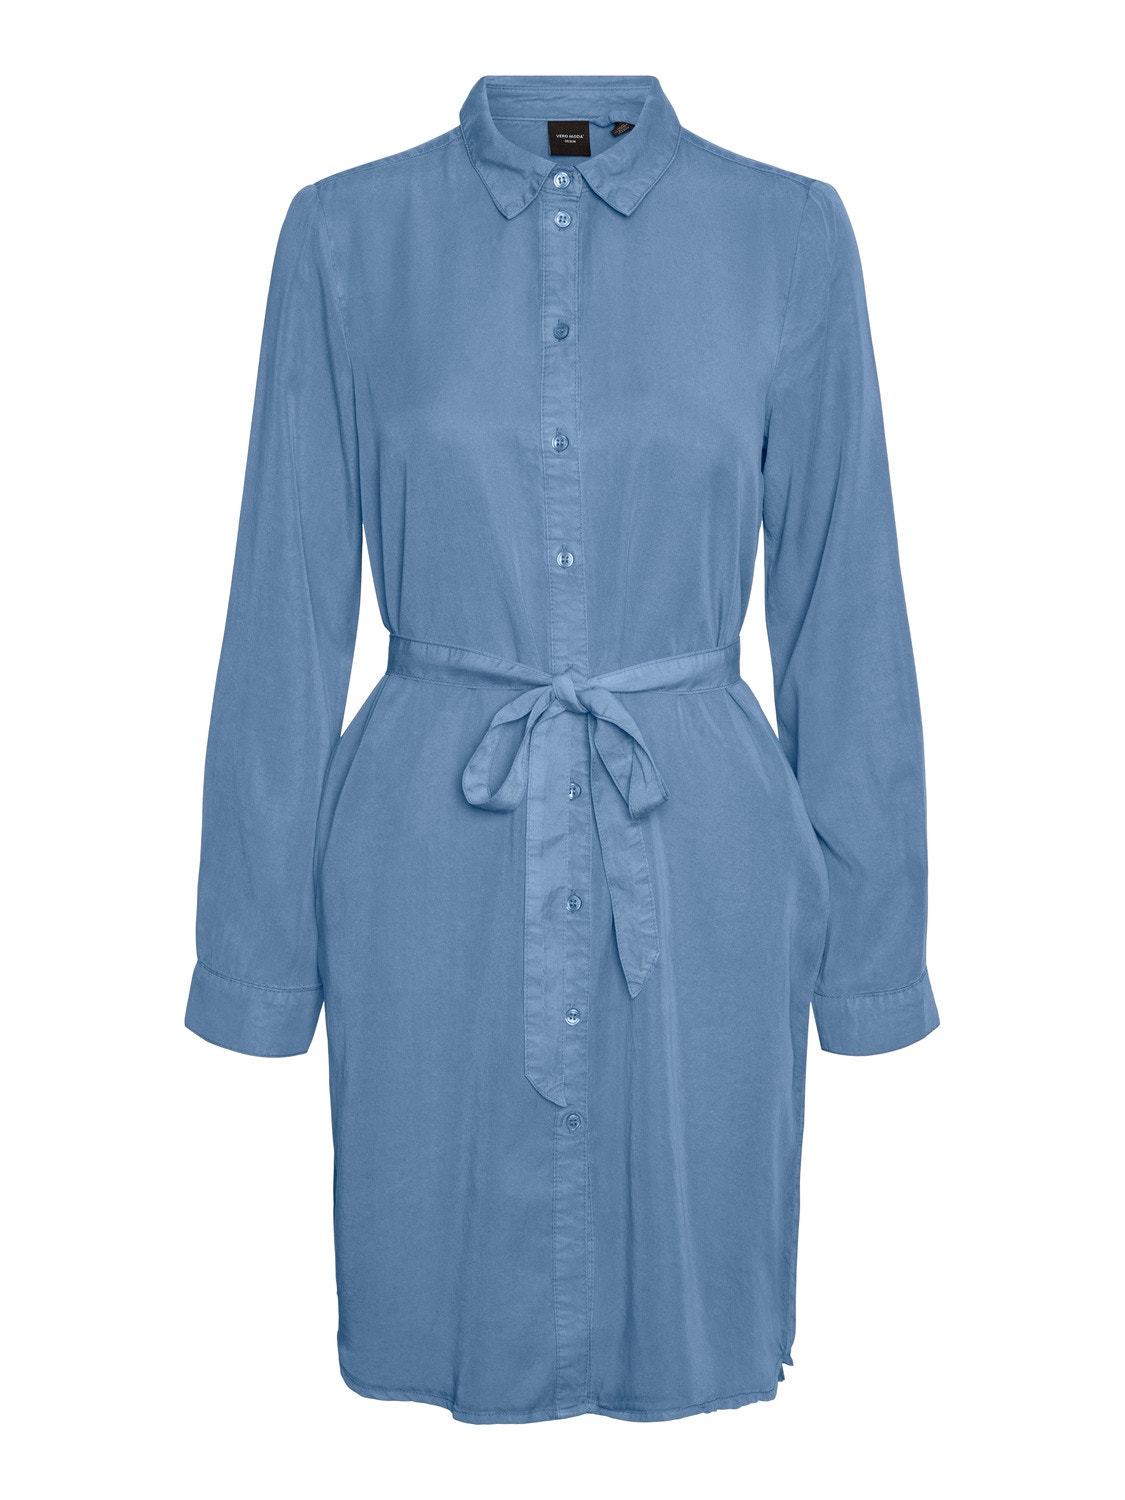 Vero Moda VMBREE Kort klänning -Medium Blue Denim - 10304866